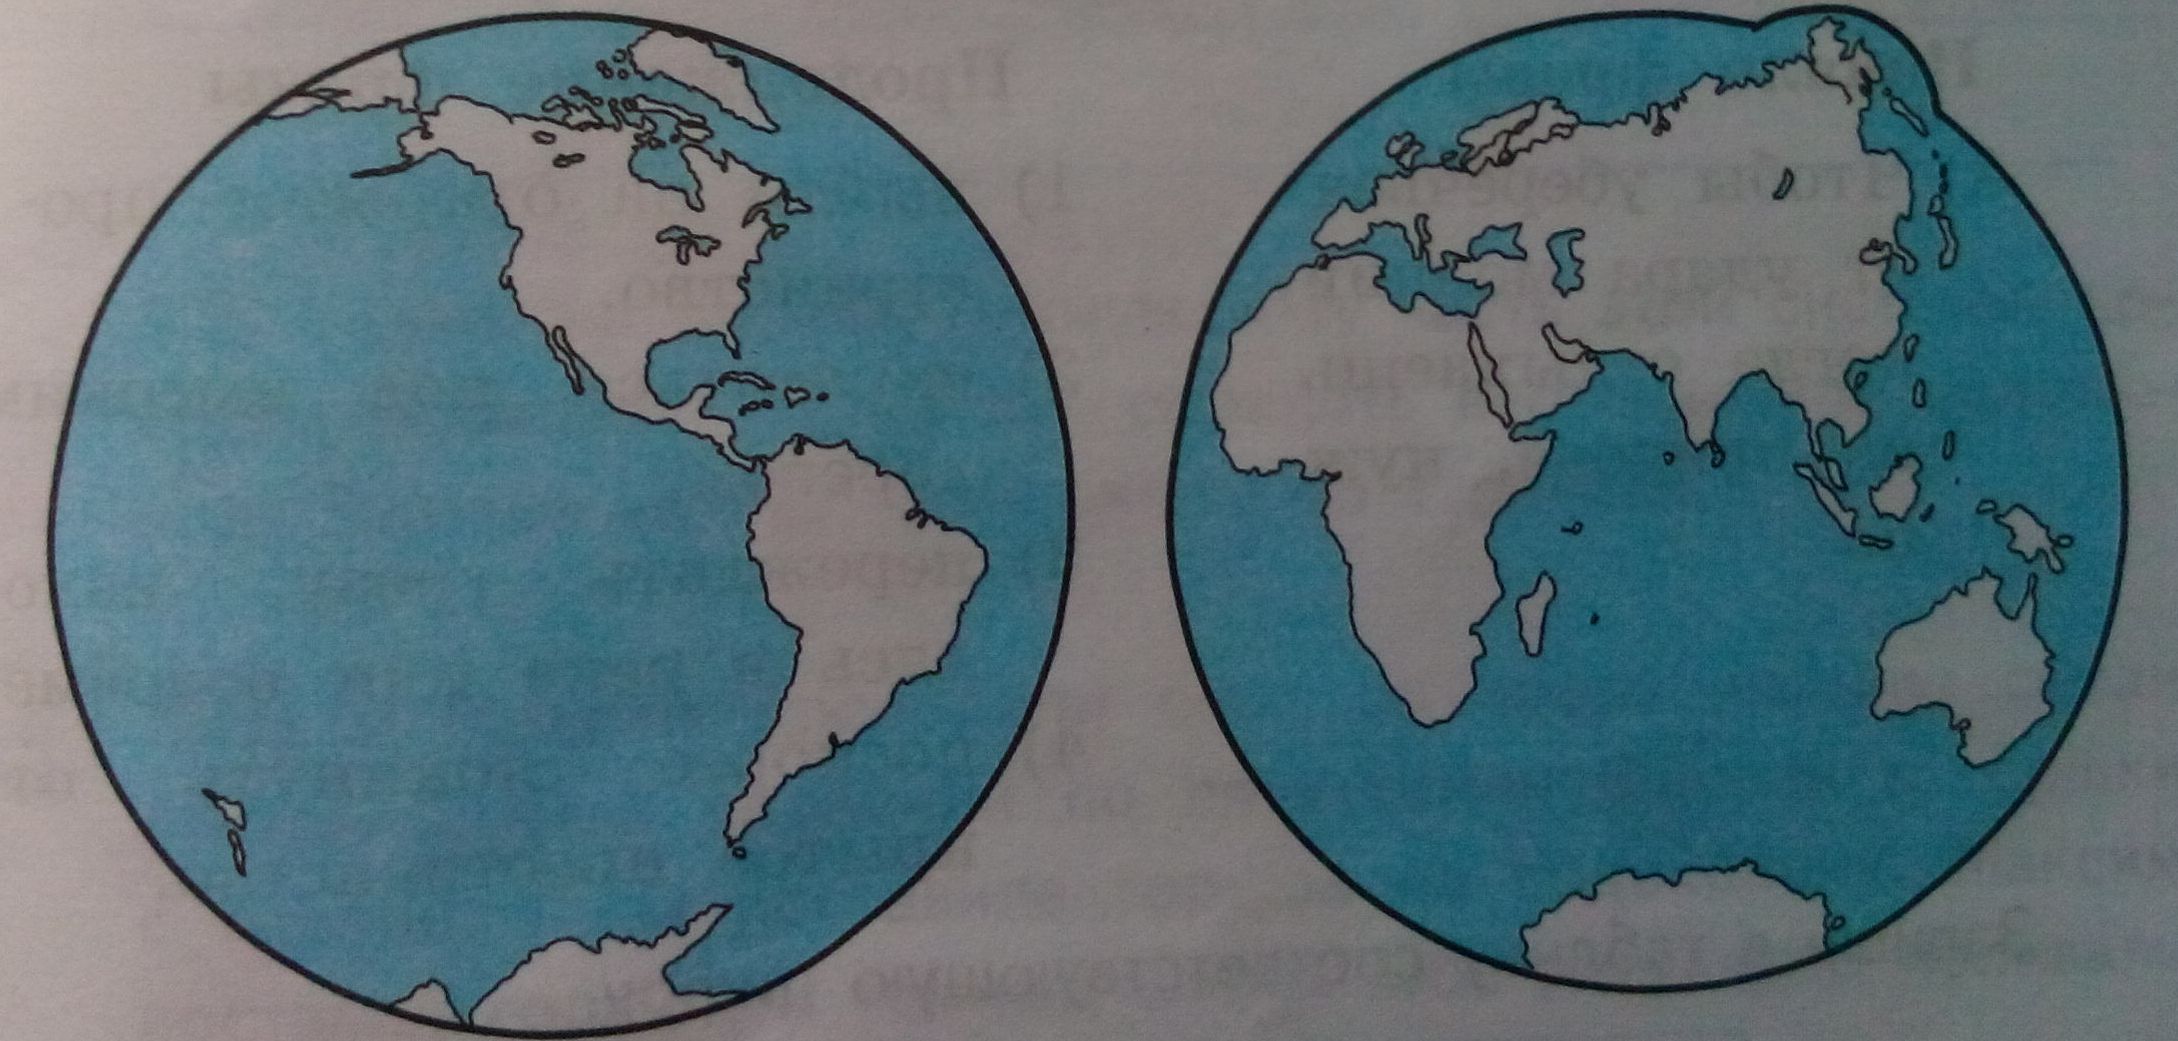 Карта материков южного полушария. Материки на карте. Нарисовать Южные материки. Какой океан отмечен на рисунке знаком вопроса. Мир глазами географа.